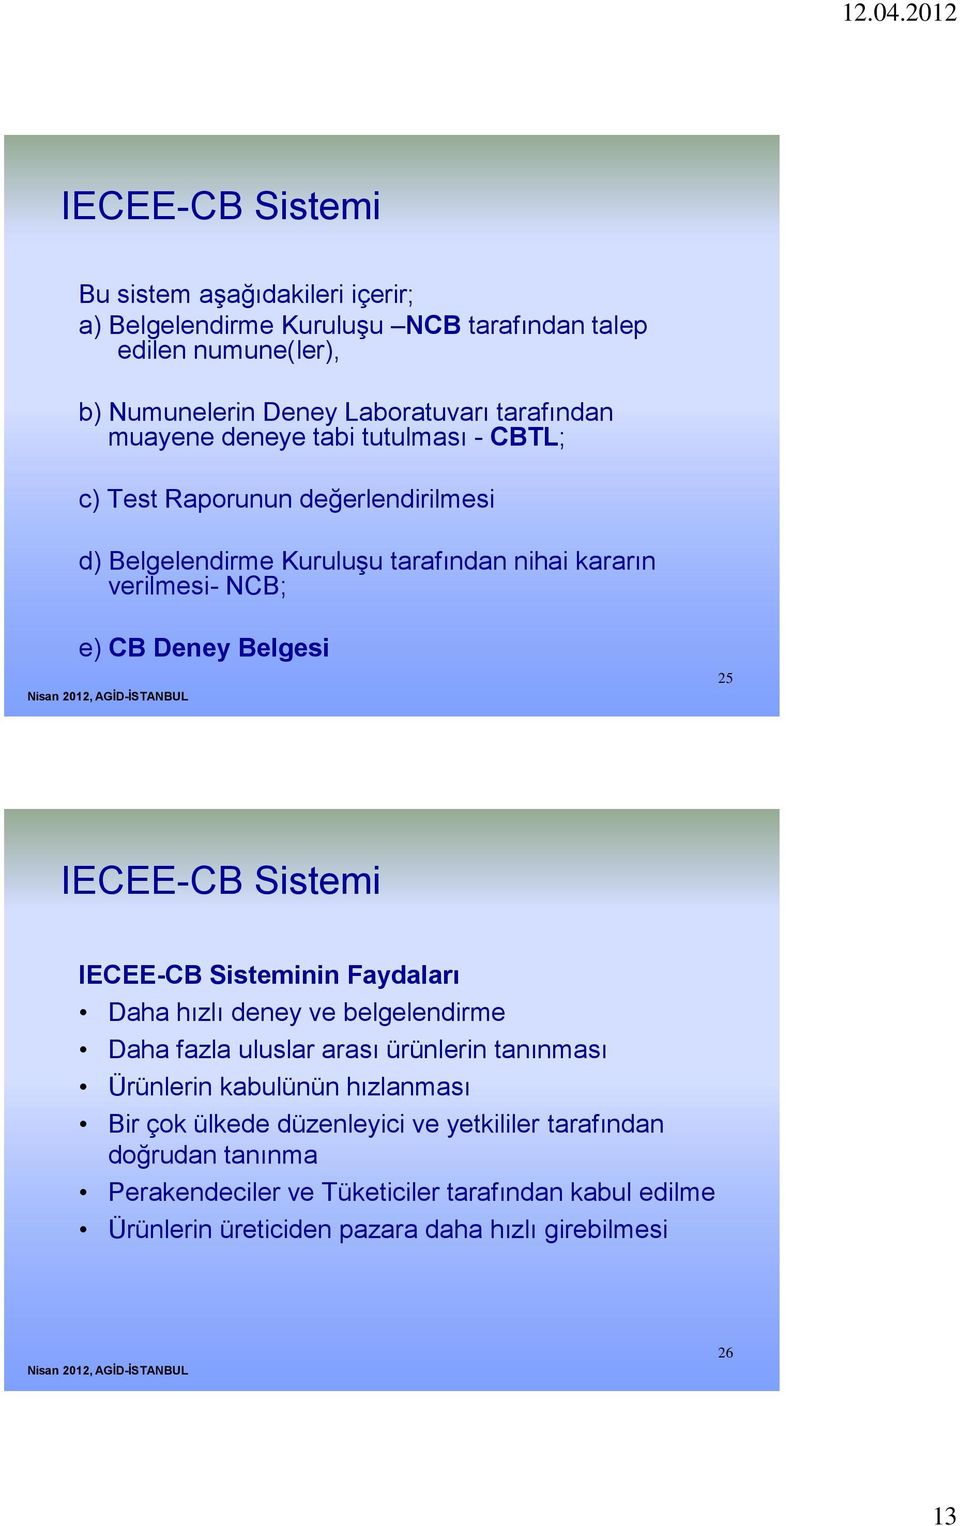 IECEE-CB Sistemi IECEE-CB Sisteminin Faydaları Daha hızlı deney ve belgelendirme Daha fazla uluslar arası ürünlerin tanınması Ürünlerin kabulünün hızlanması Bir çok